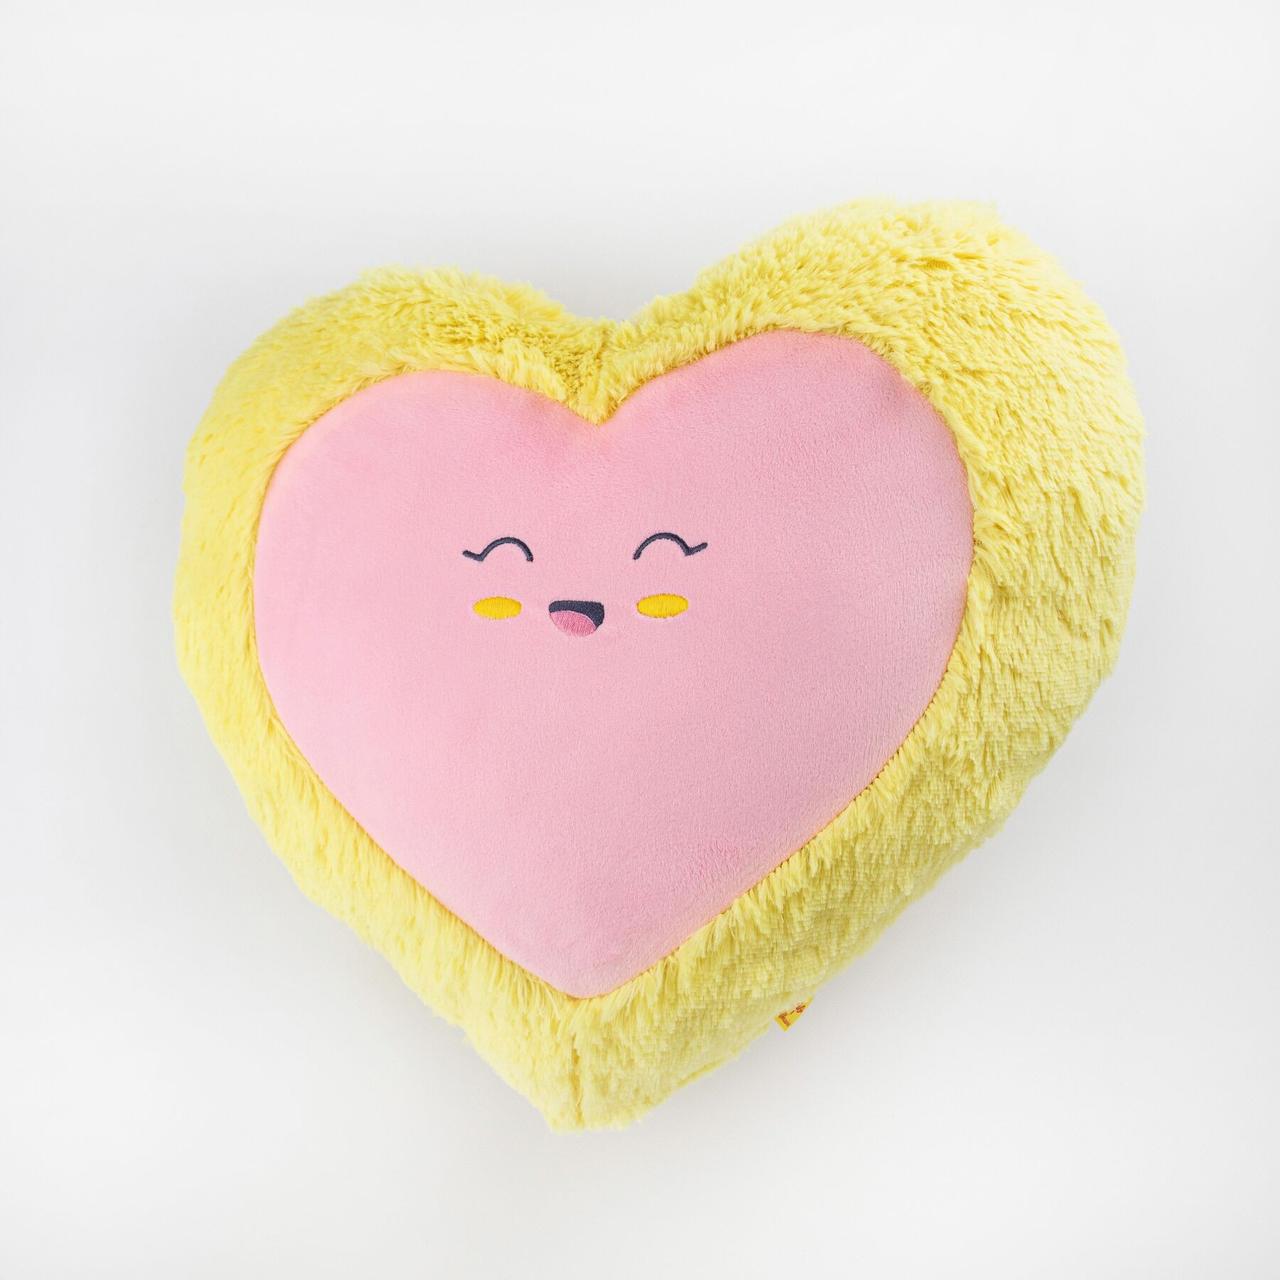 М'яка іграшка Kidsqo Подушка серце посмішка 43см Жовто-рожева (KD659)